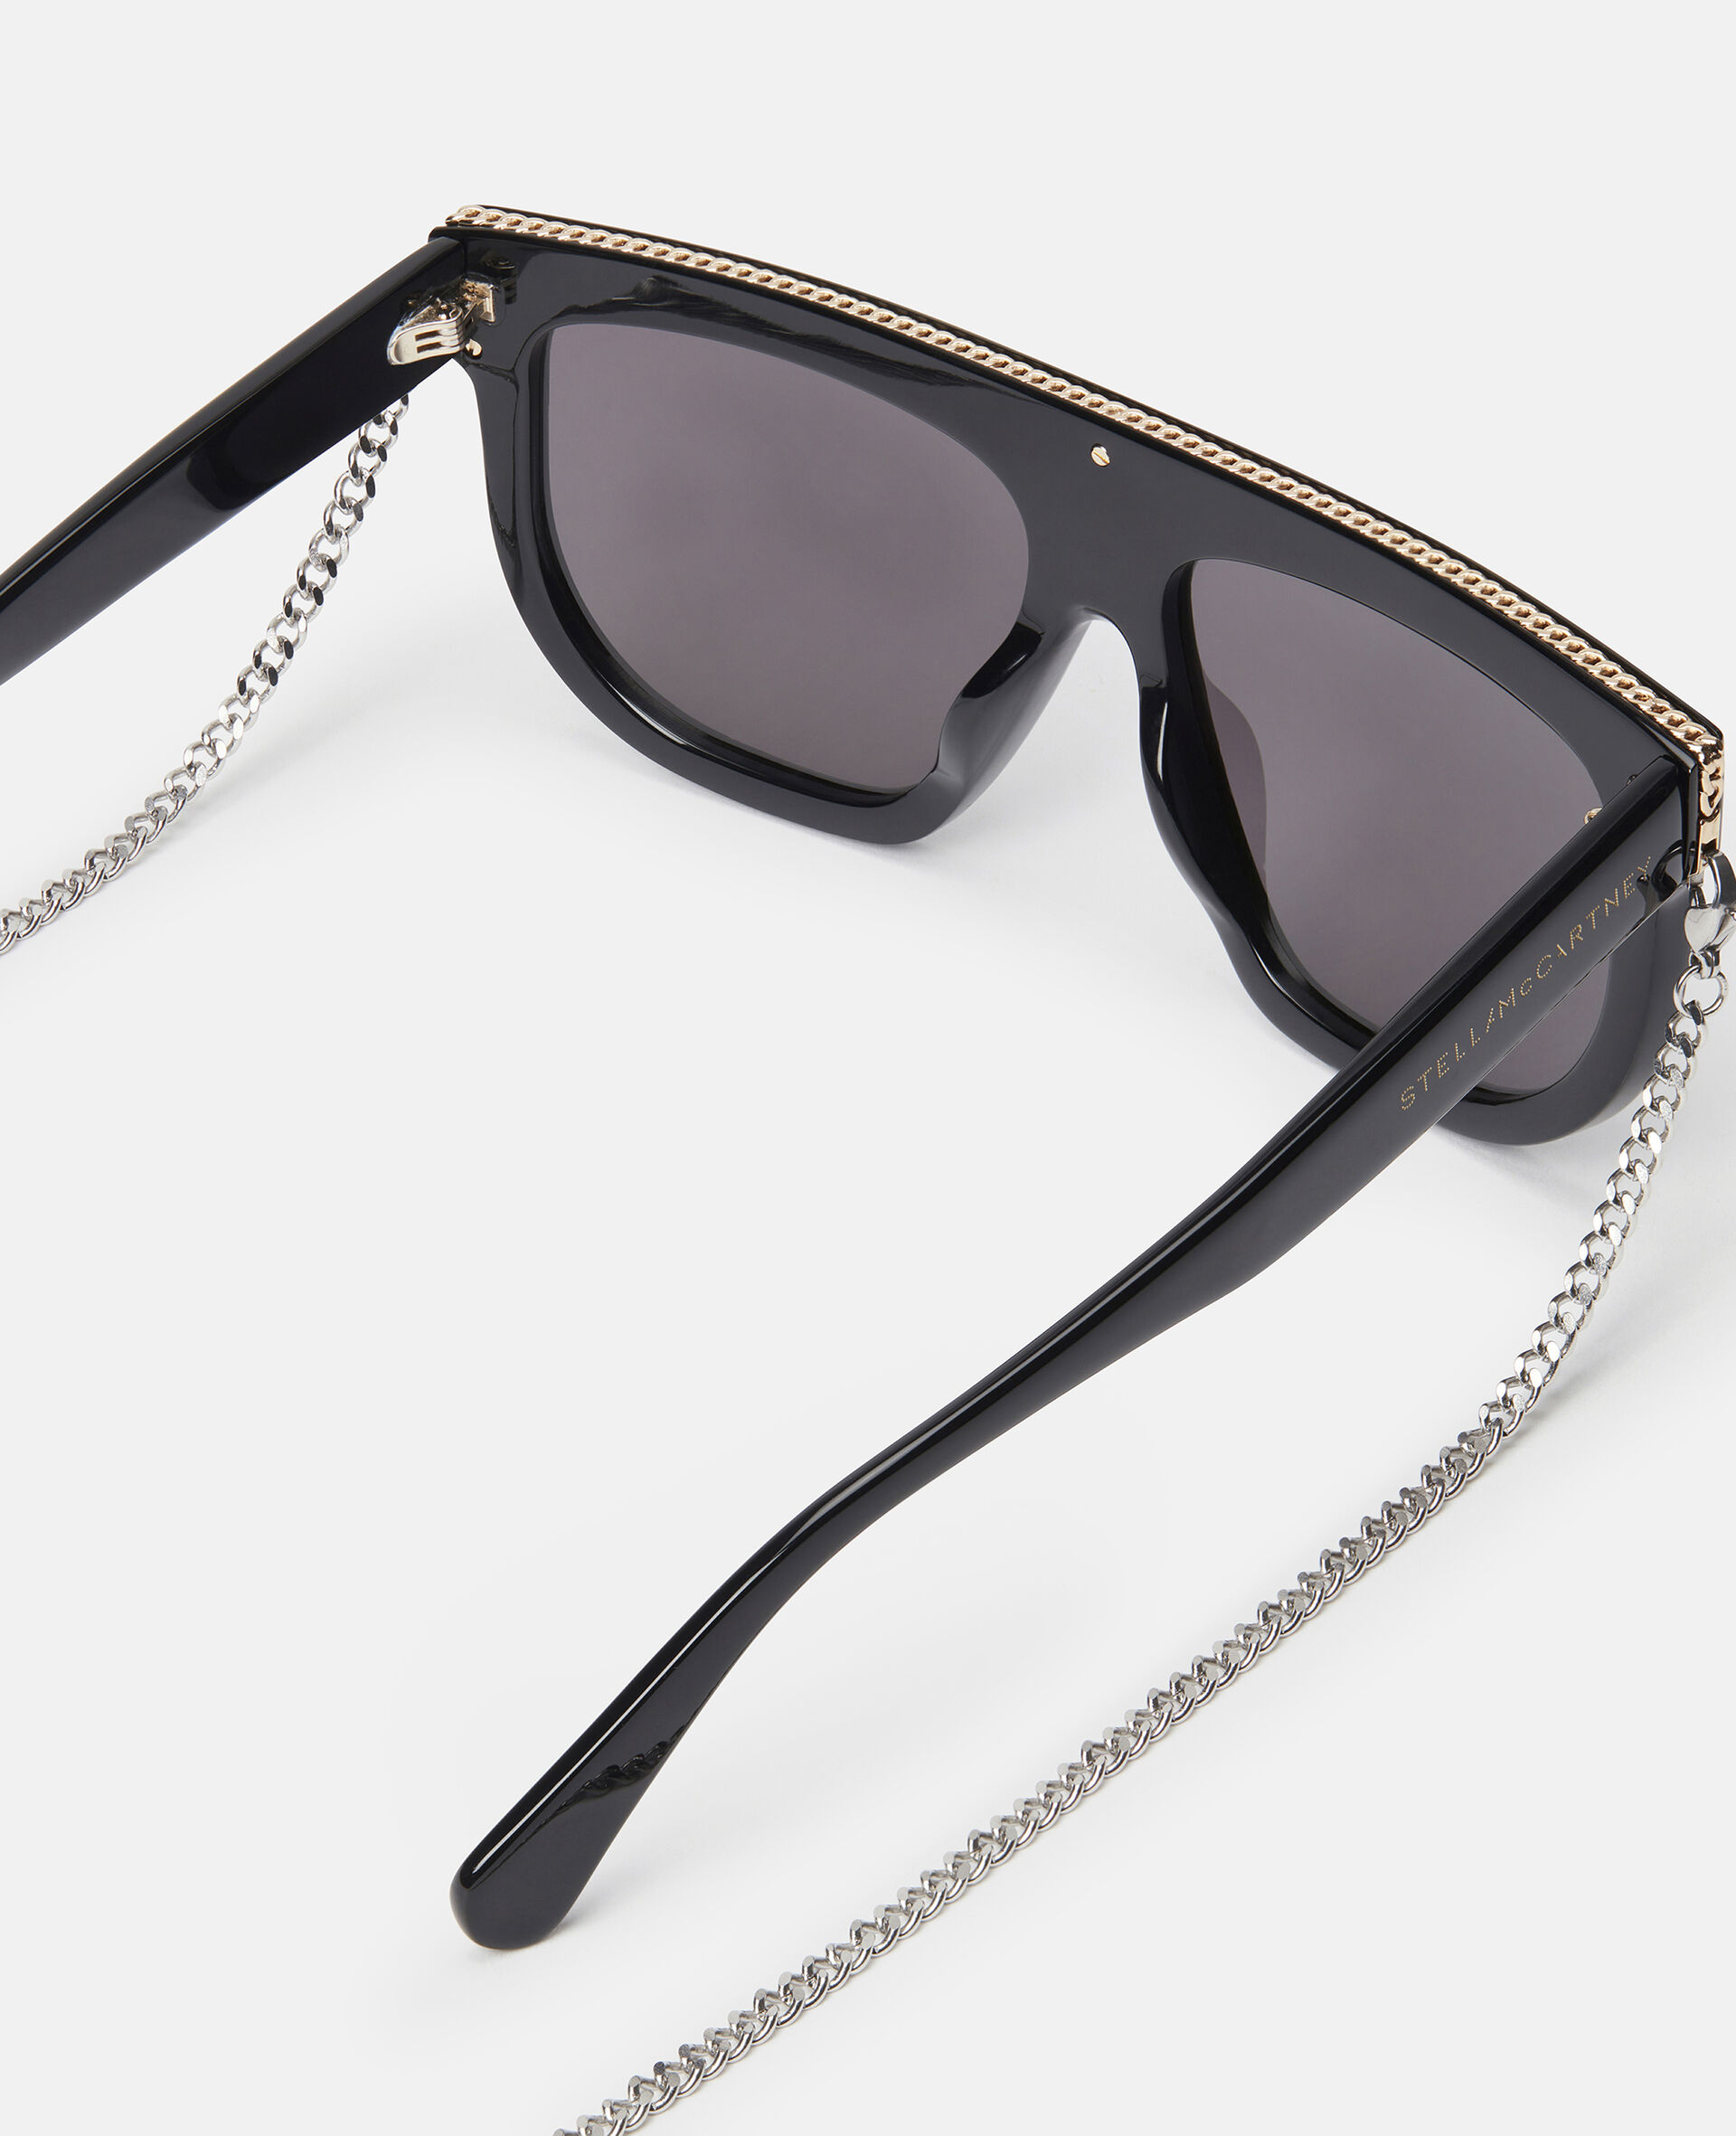 Geometric Sunglasses-Black-large image number 2